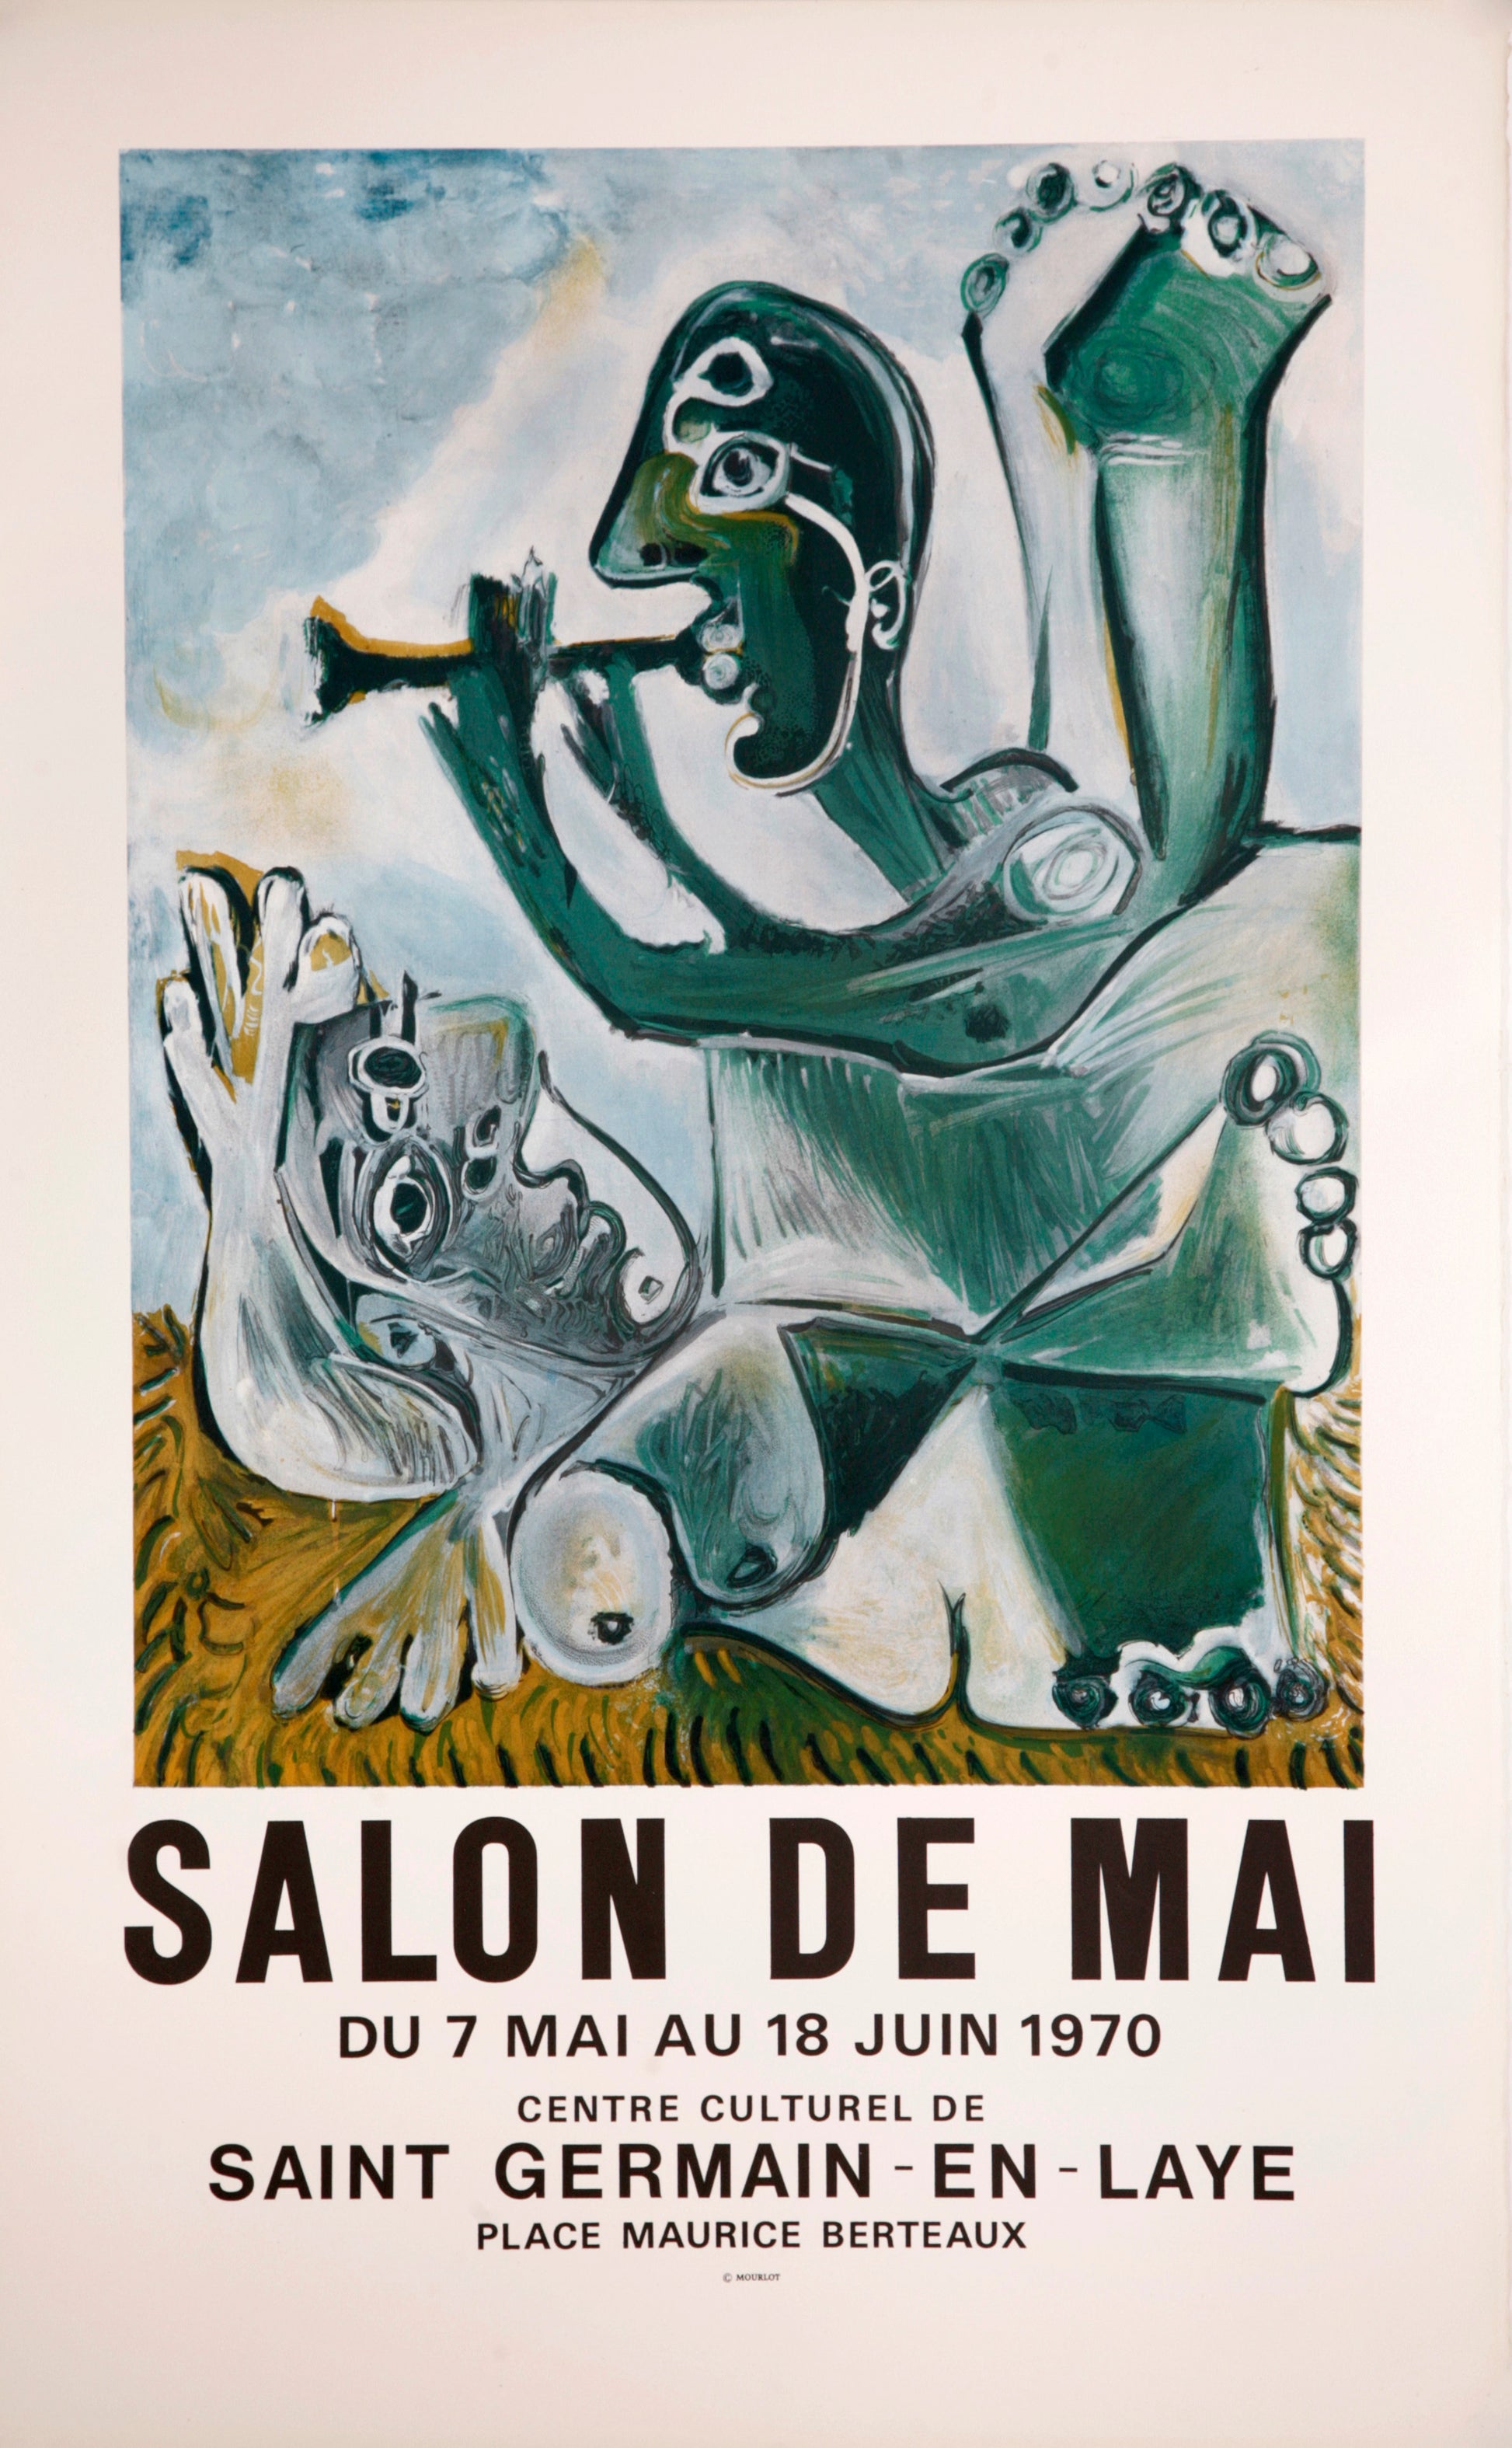 Nu Couché et Joueur de Flute - Salon de Mai (after) Pablo Picasso, 1970 - Mourlot Editions - Fine_Art - Poster - Lithograph - Wall Art - Vintage - Prints - Original